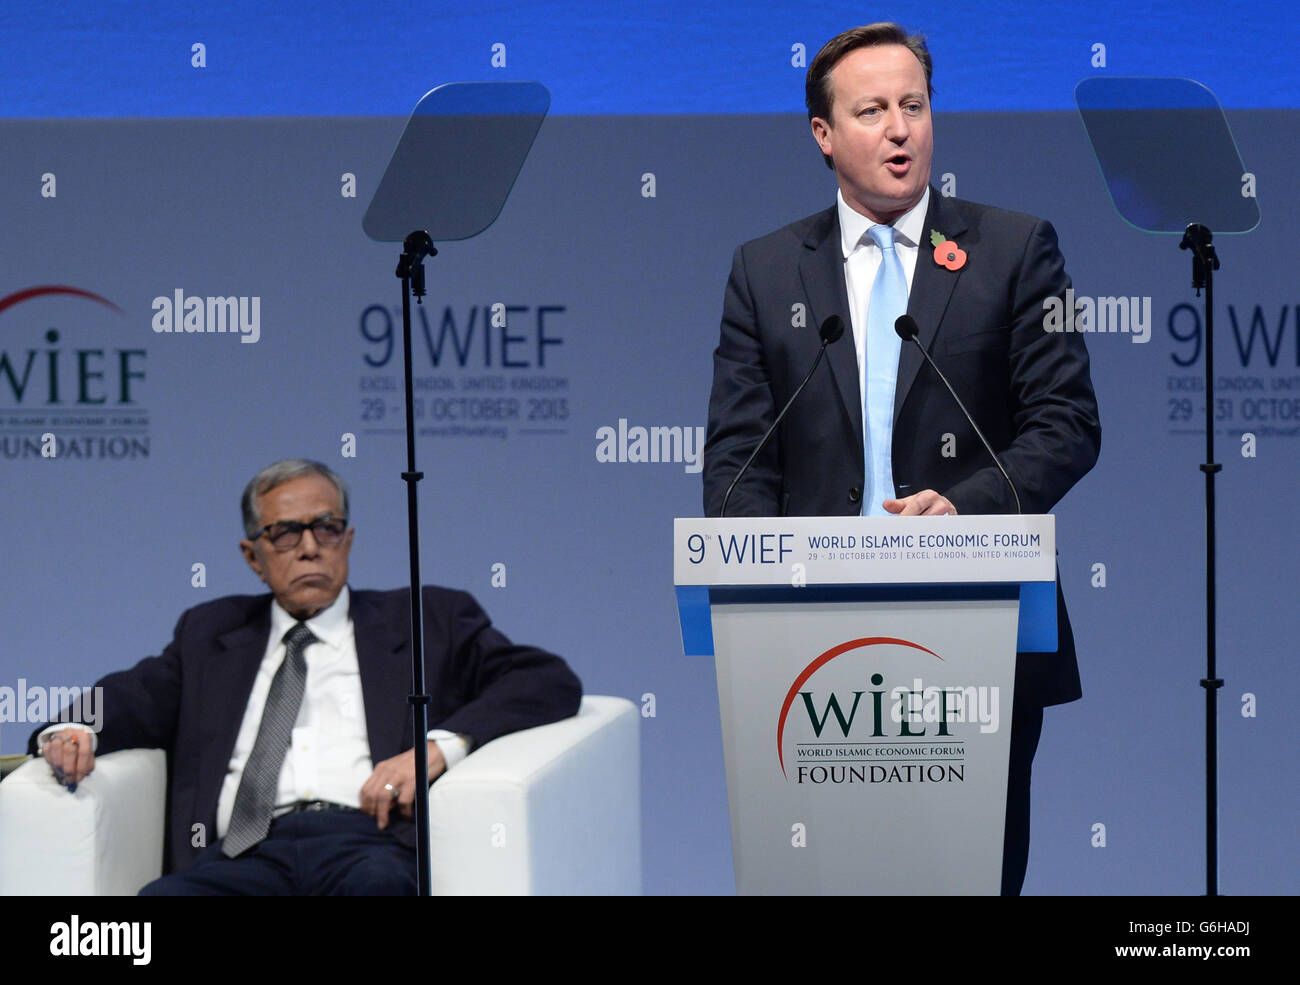 Le Premier ministre David Cameron s'exprime lors du 9e Forum économique islamique mondial à Excel, Londres, auquel participent d'autres dirigeants islamiques et dont Cameron est l'hôte. Banque D'Images